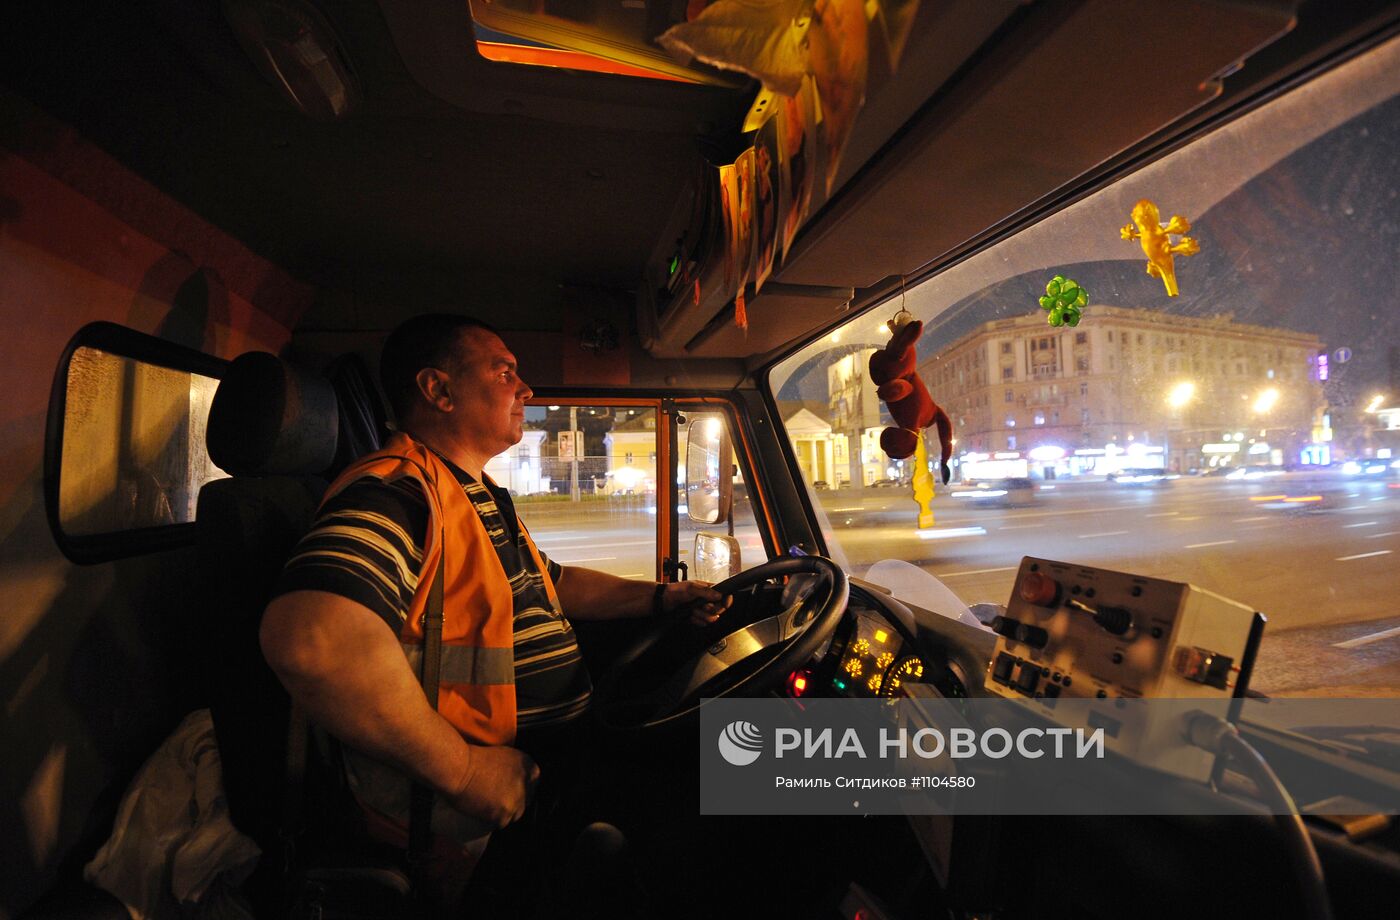 Мойка улично-дорожной сети Москвы